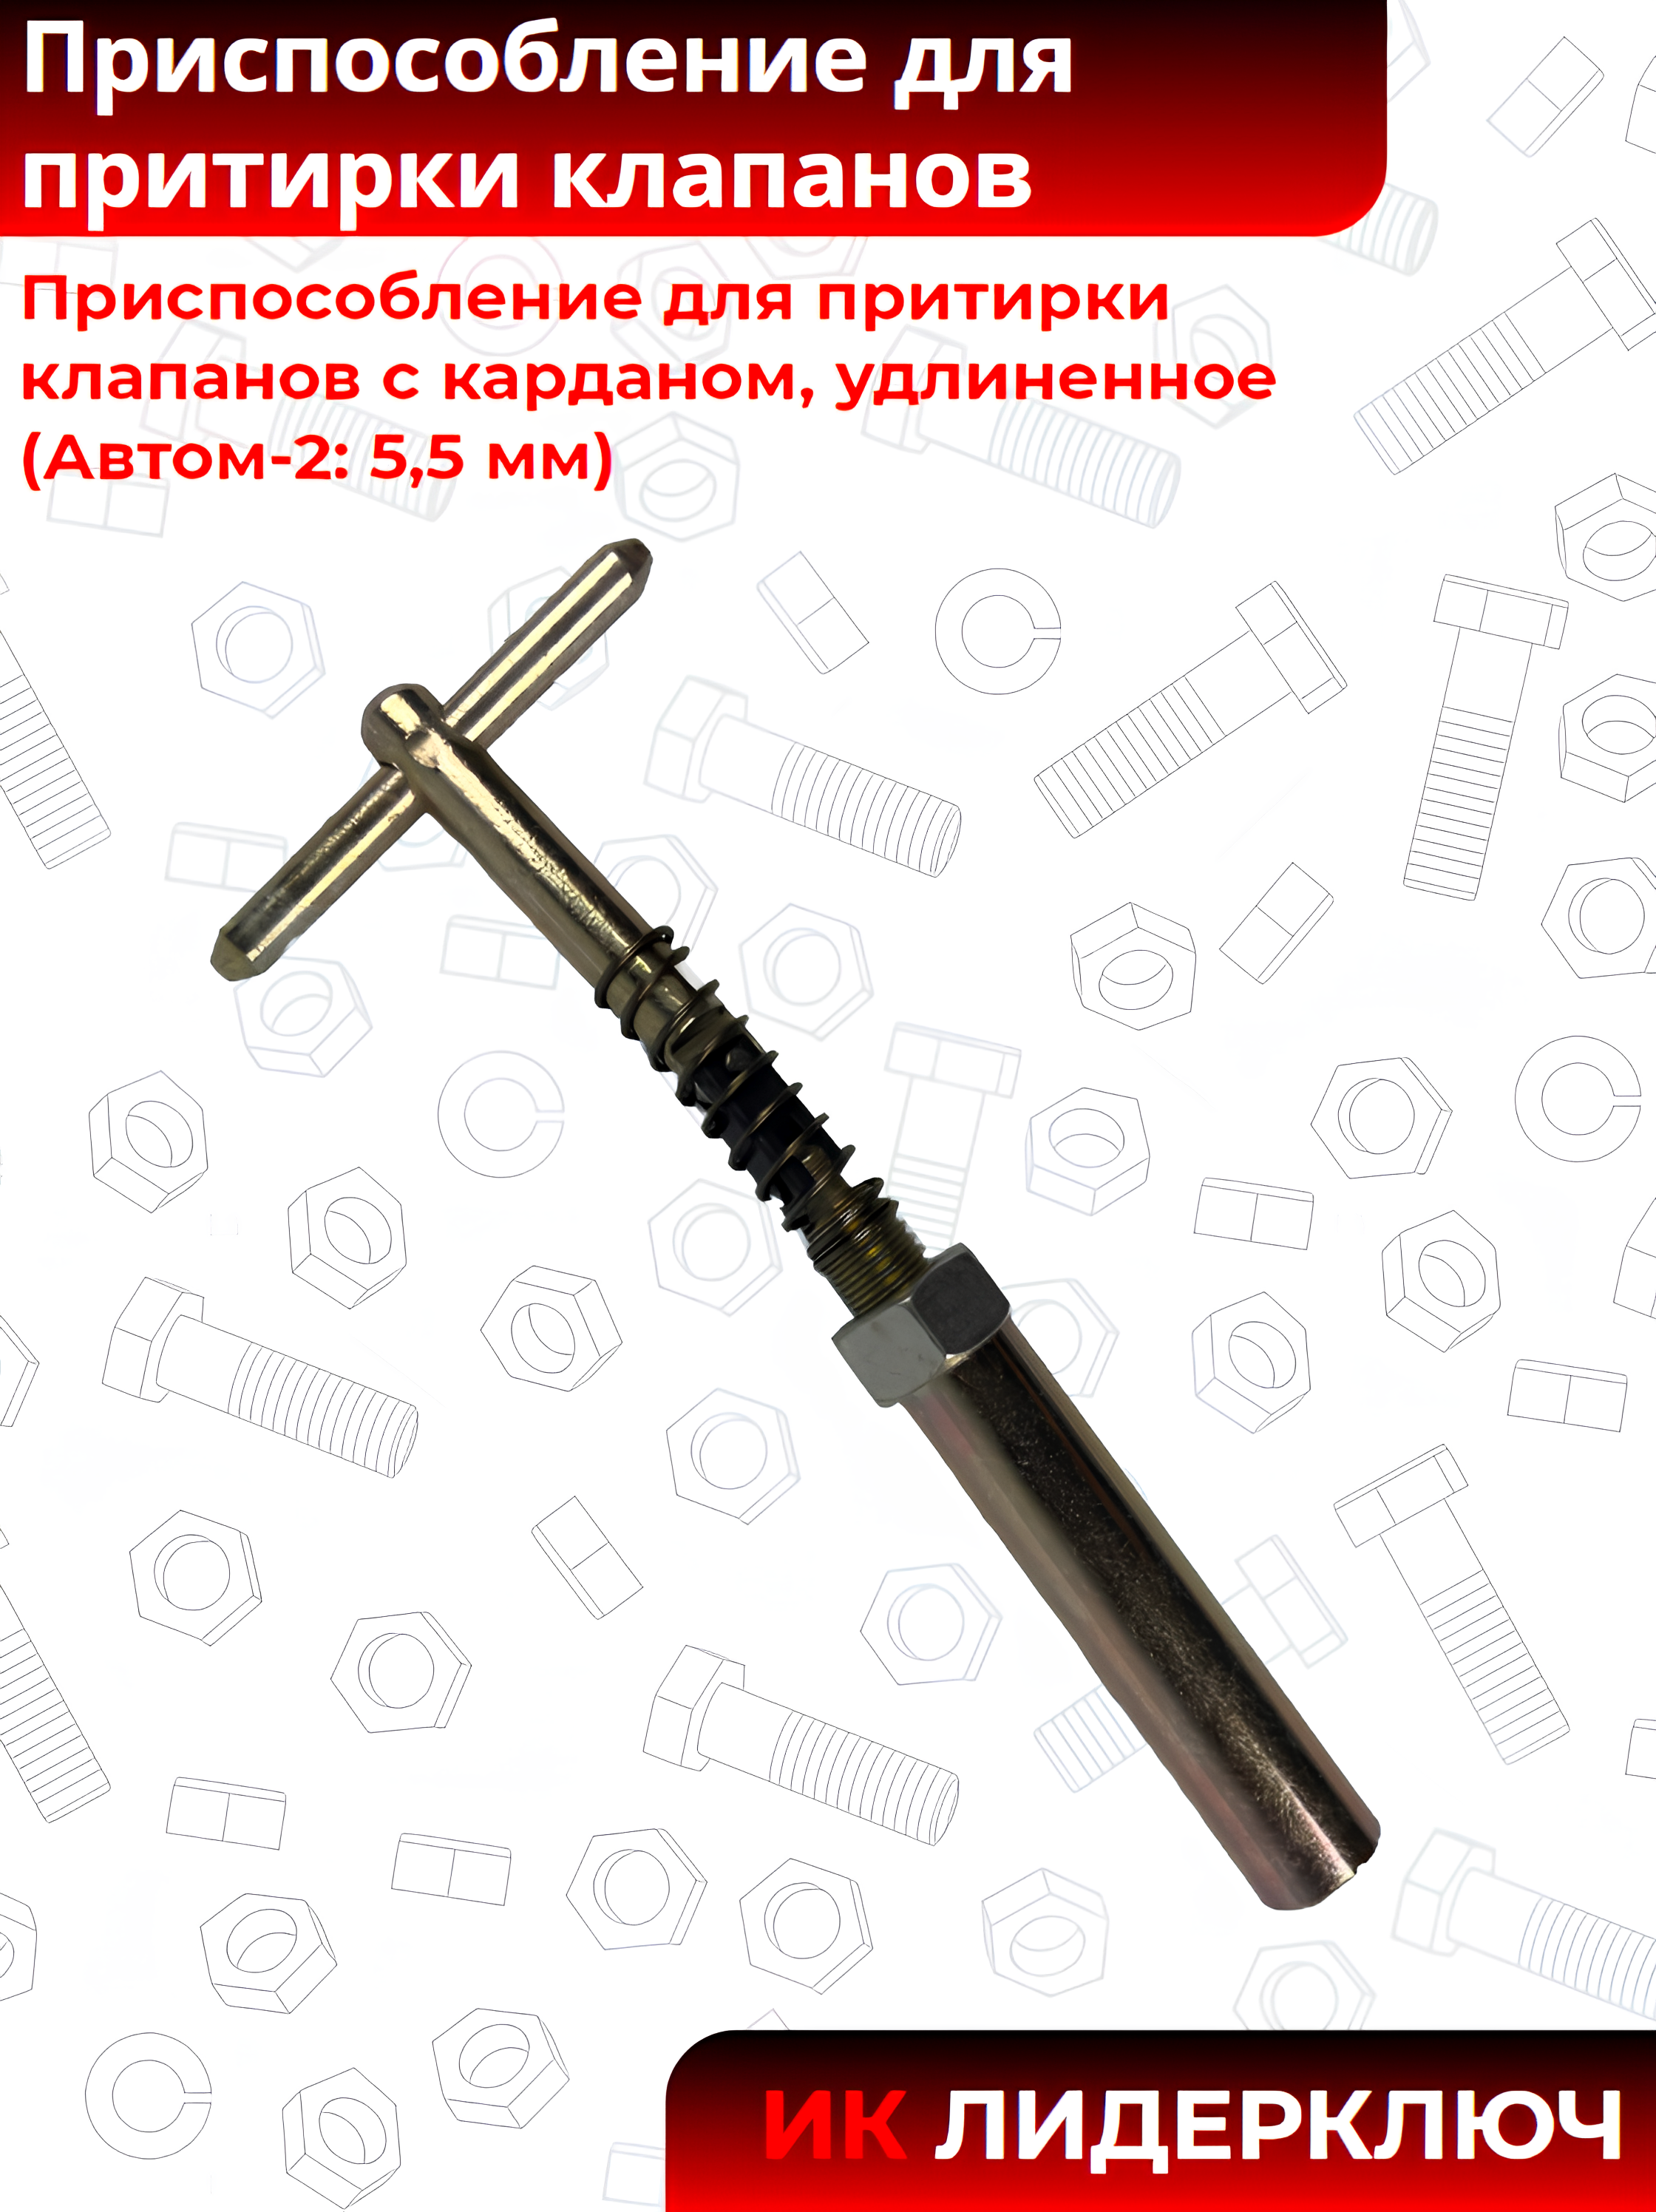 Приспособление для притирки клапанов с карданом, удлиненное (Автом-2: 5,5 мм)